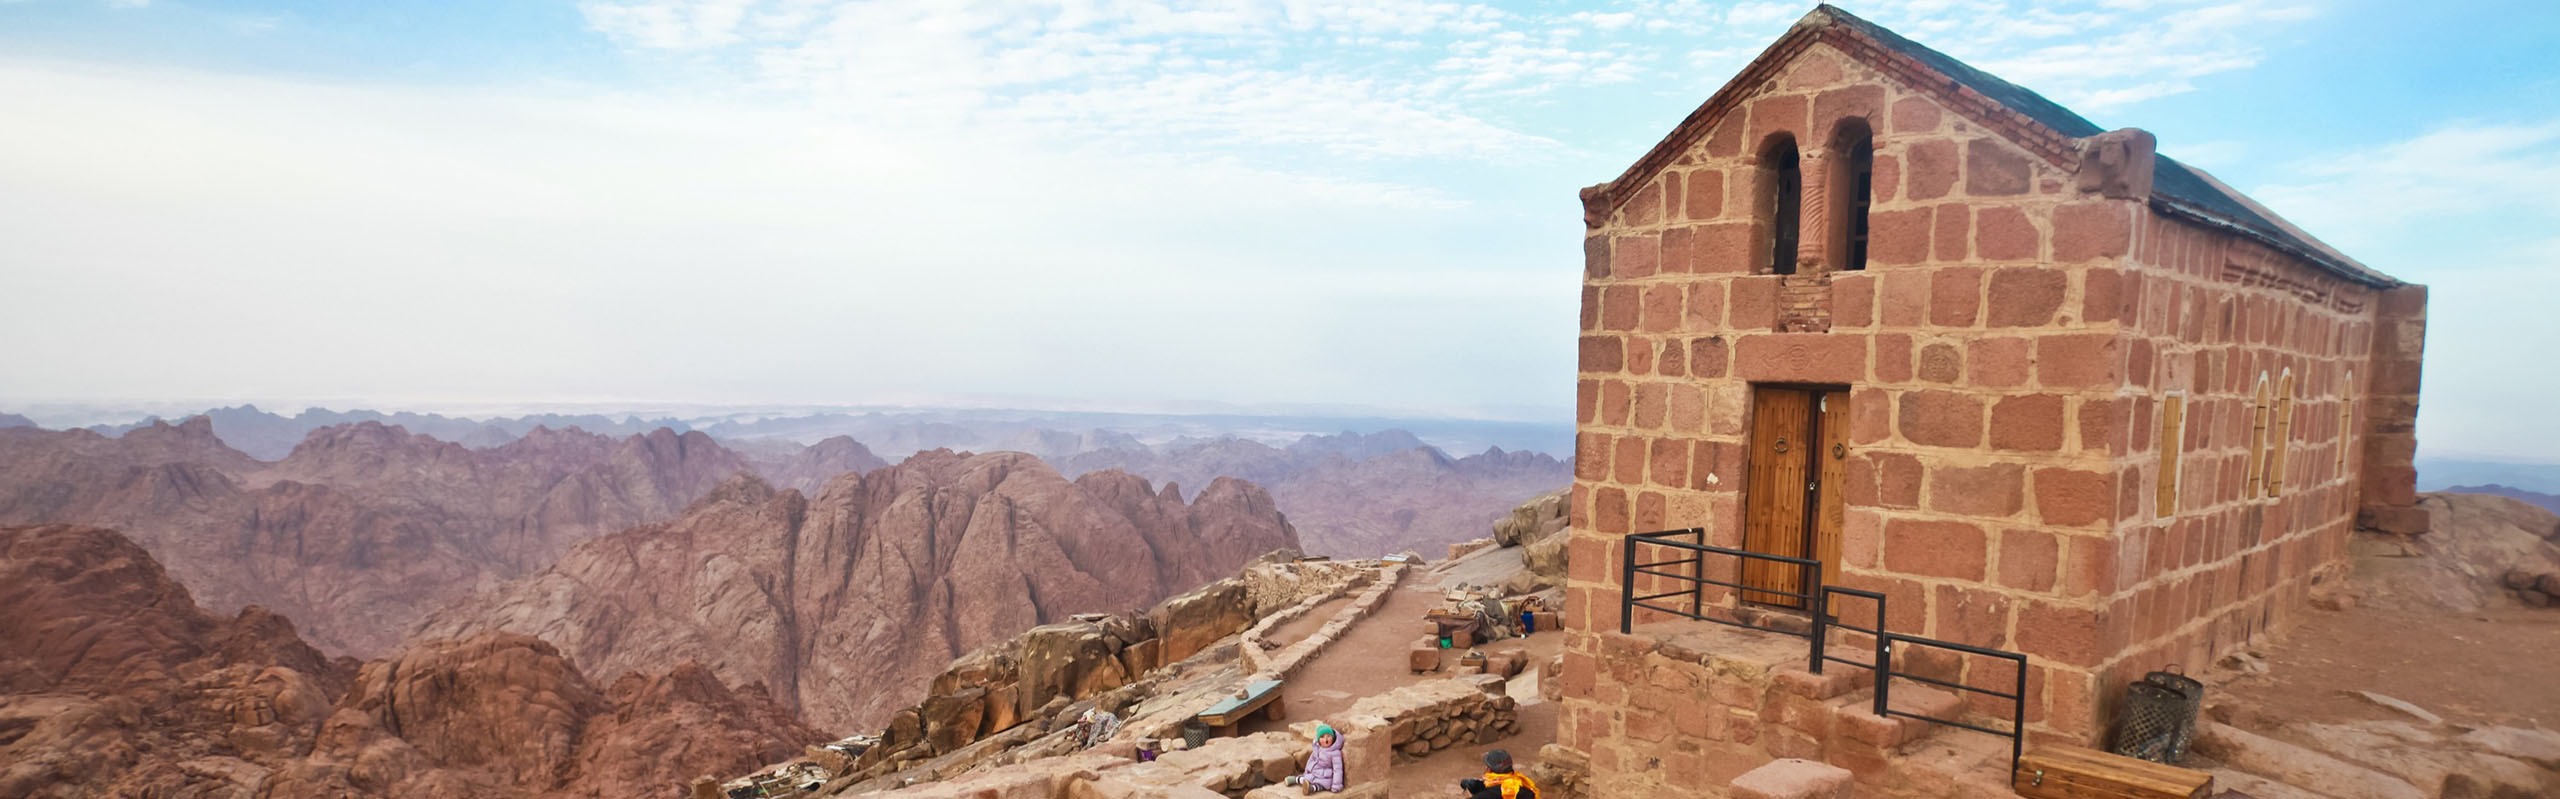 9-Day Egypt Tour with Mount Sinai